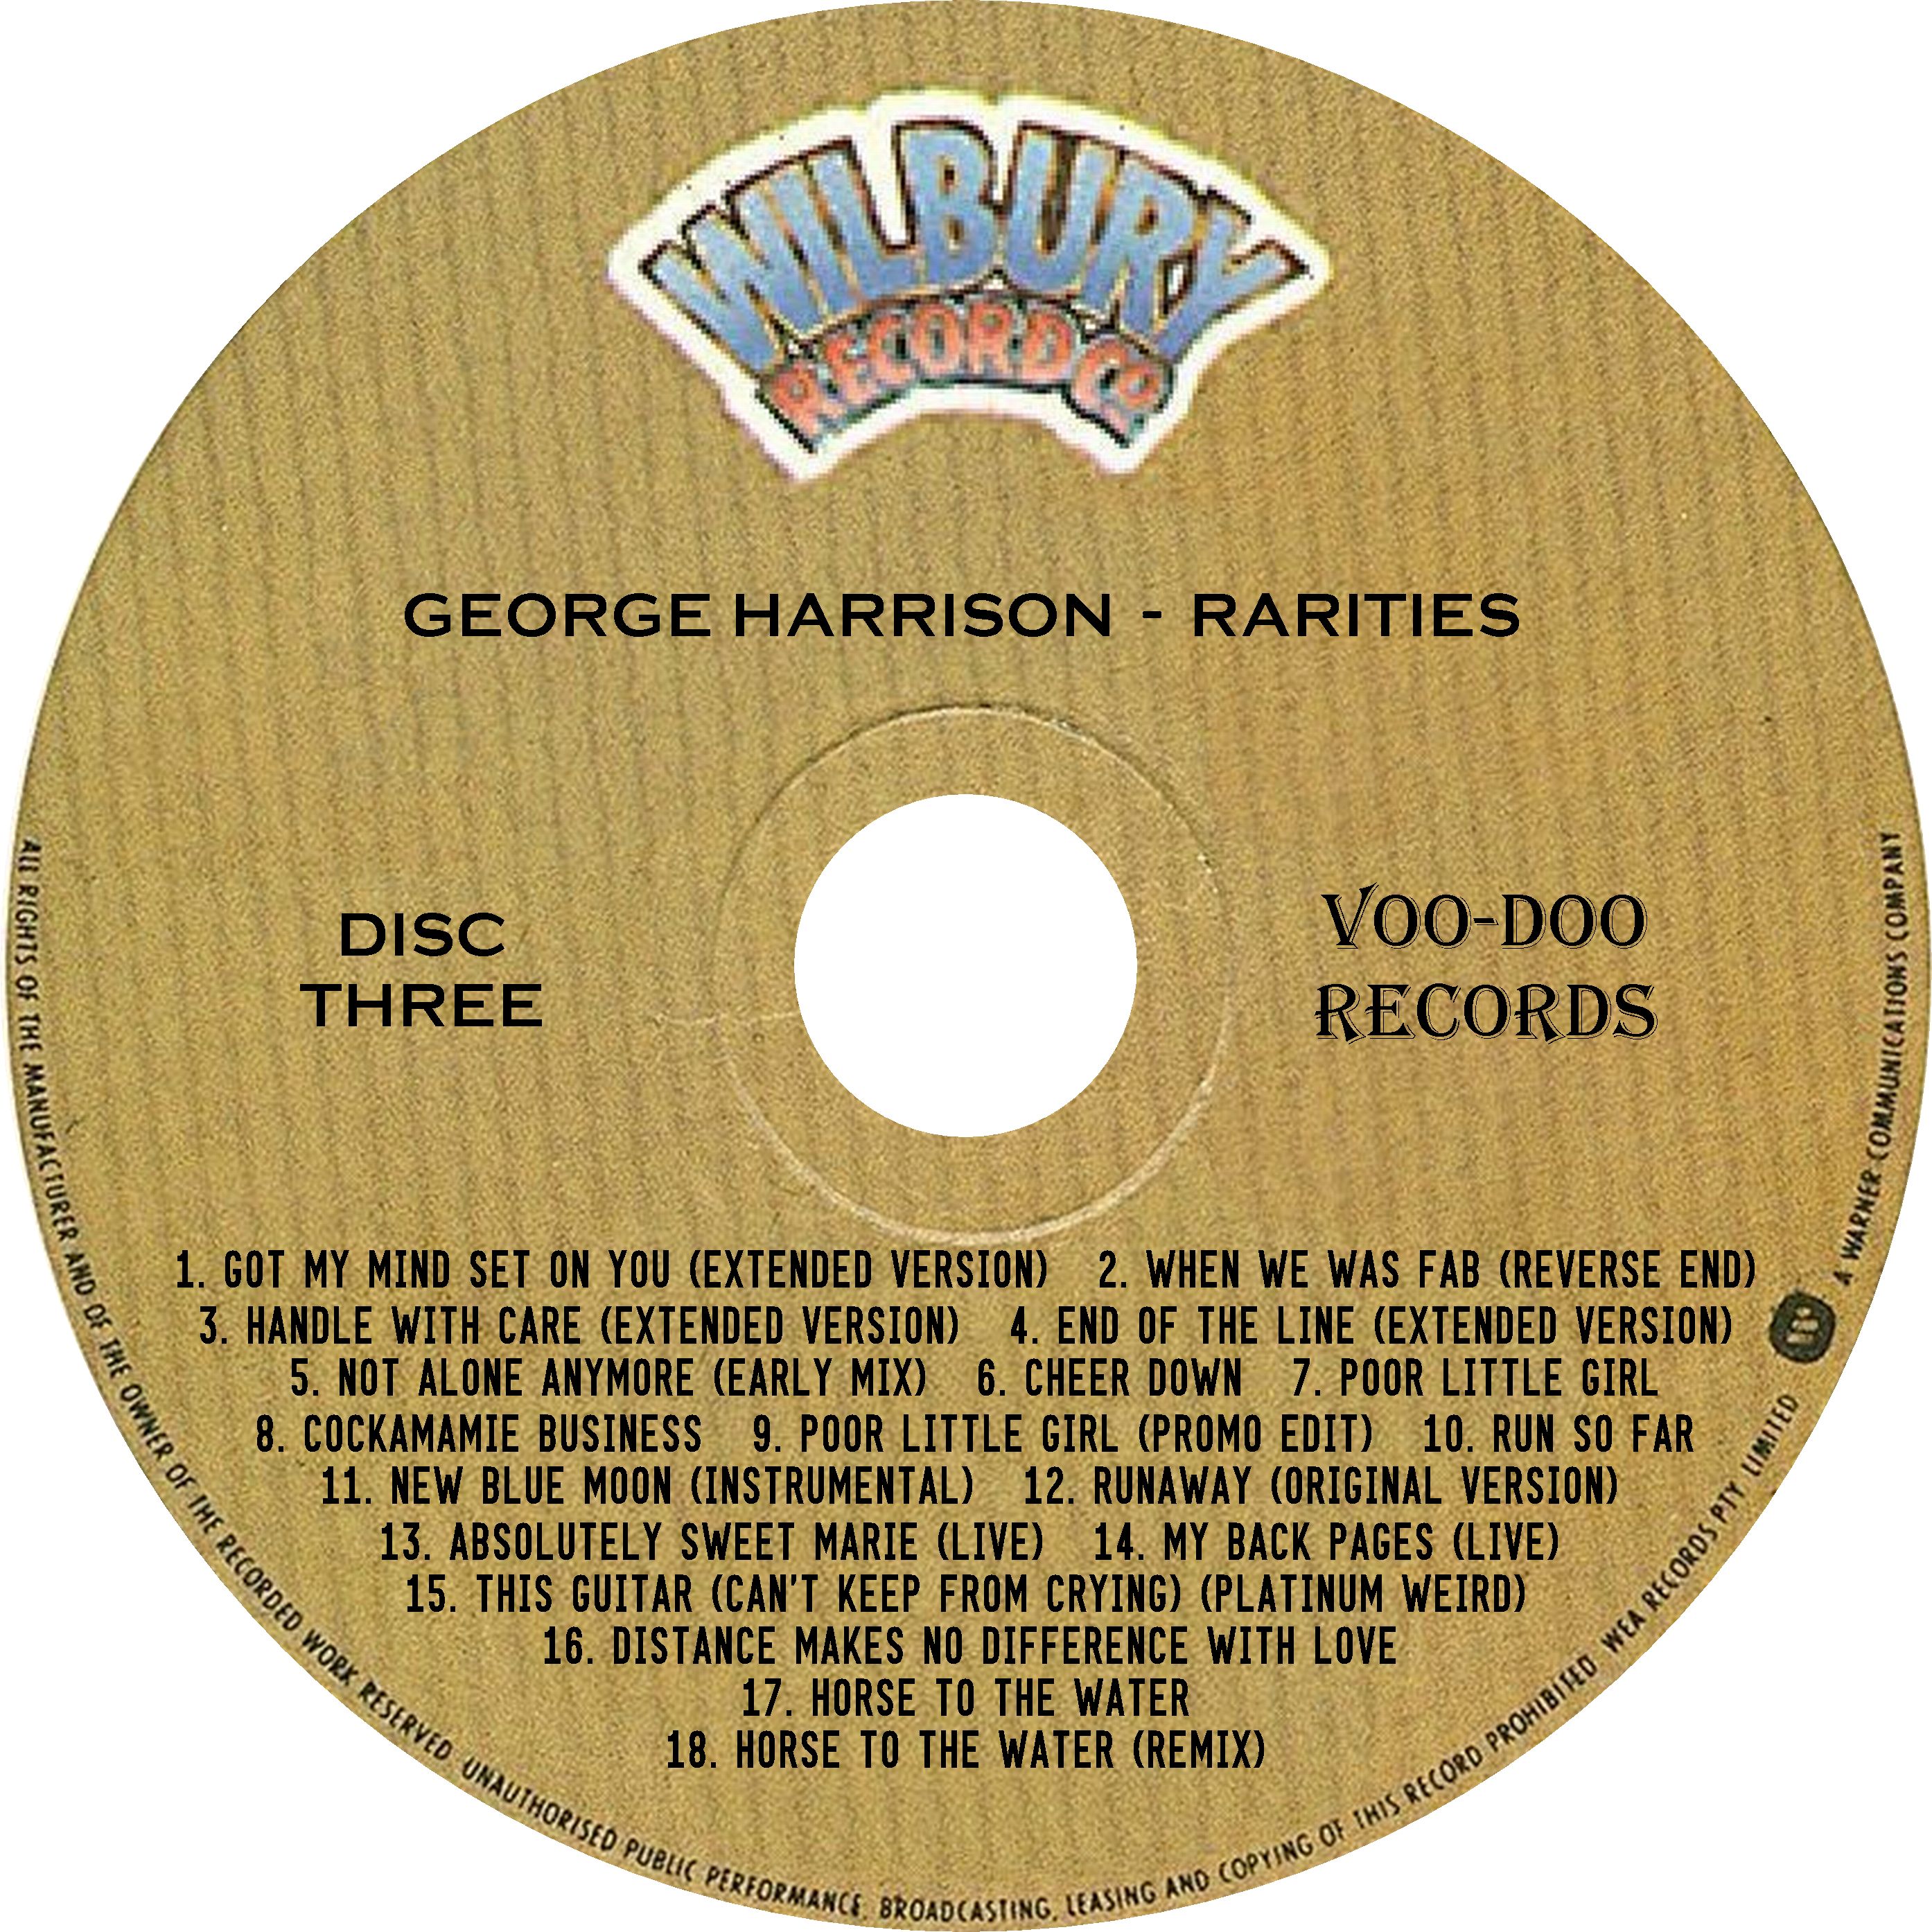 GeorgeHarrison-Rarities (1).jpg